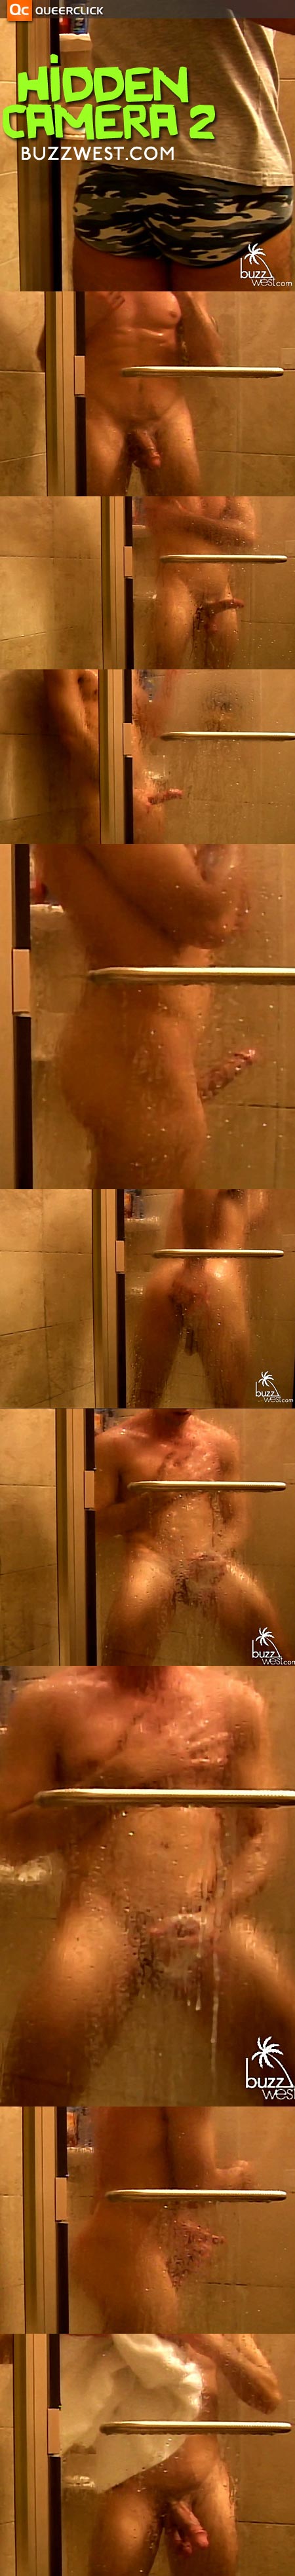 Buzz West's Hidden Shower Cam